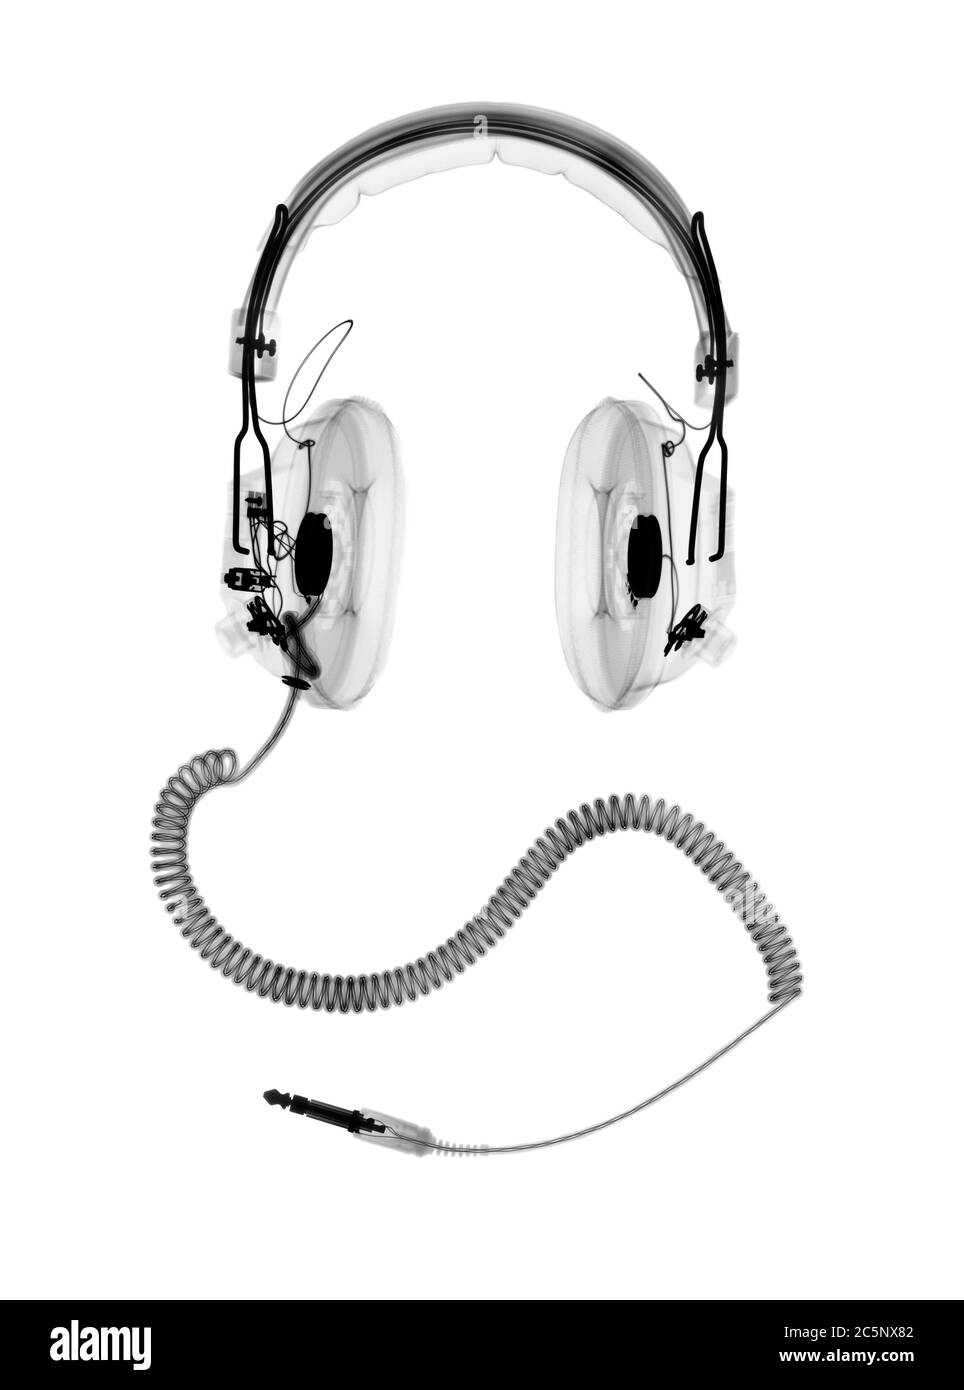 Headphones, X-ray. Stock Photo